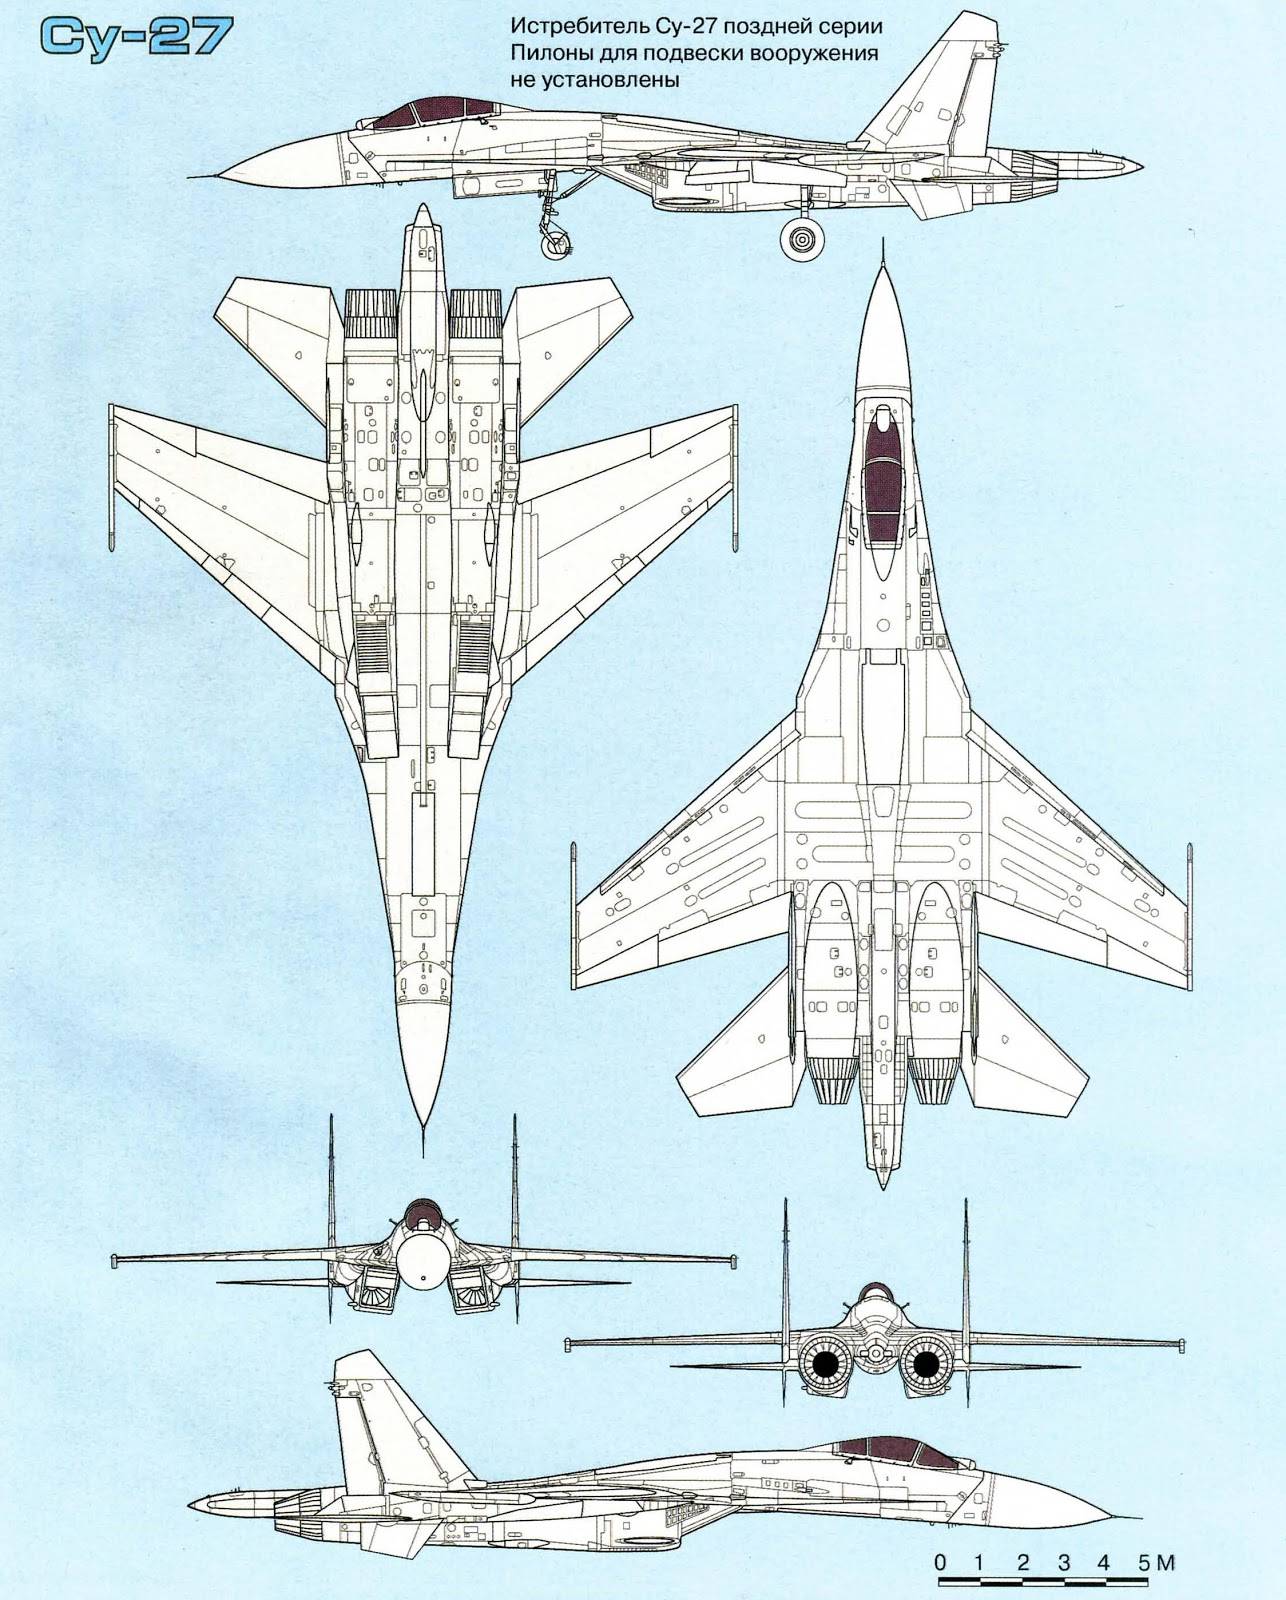 Ту-114 - общий каталог современной авиации